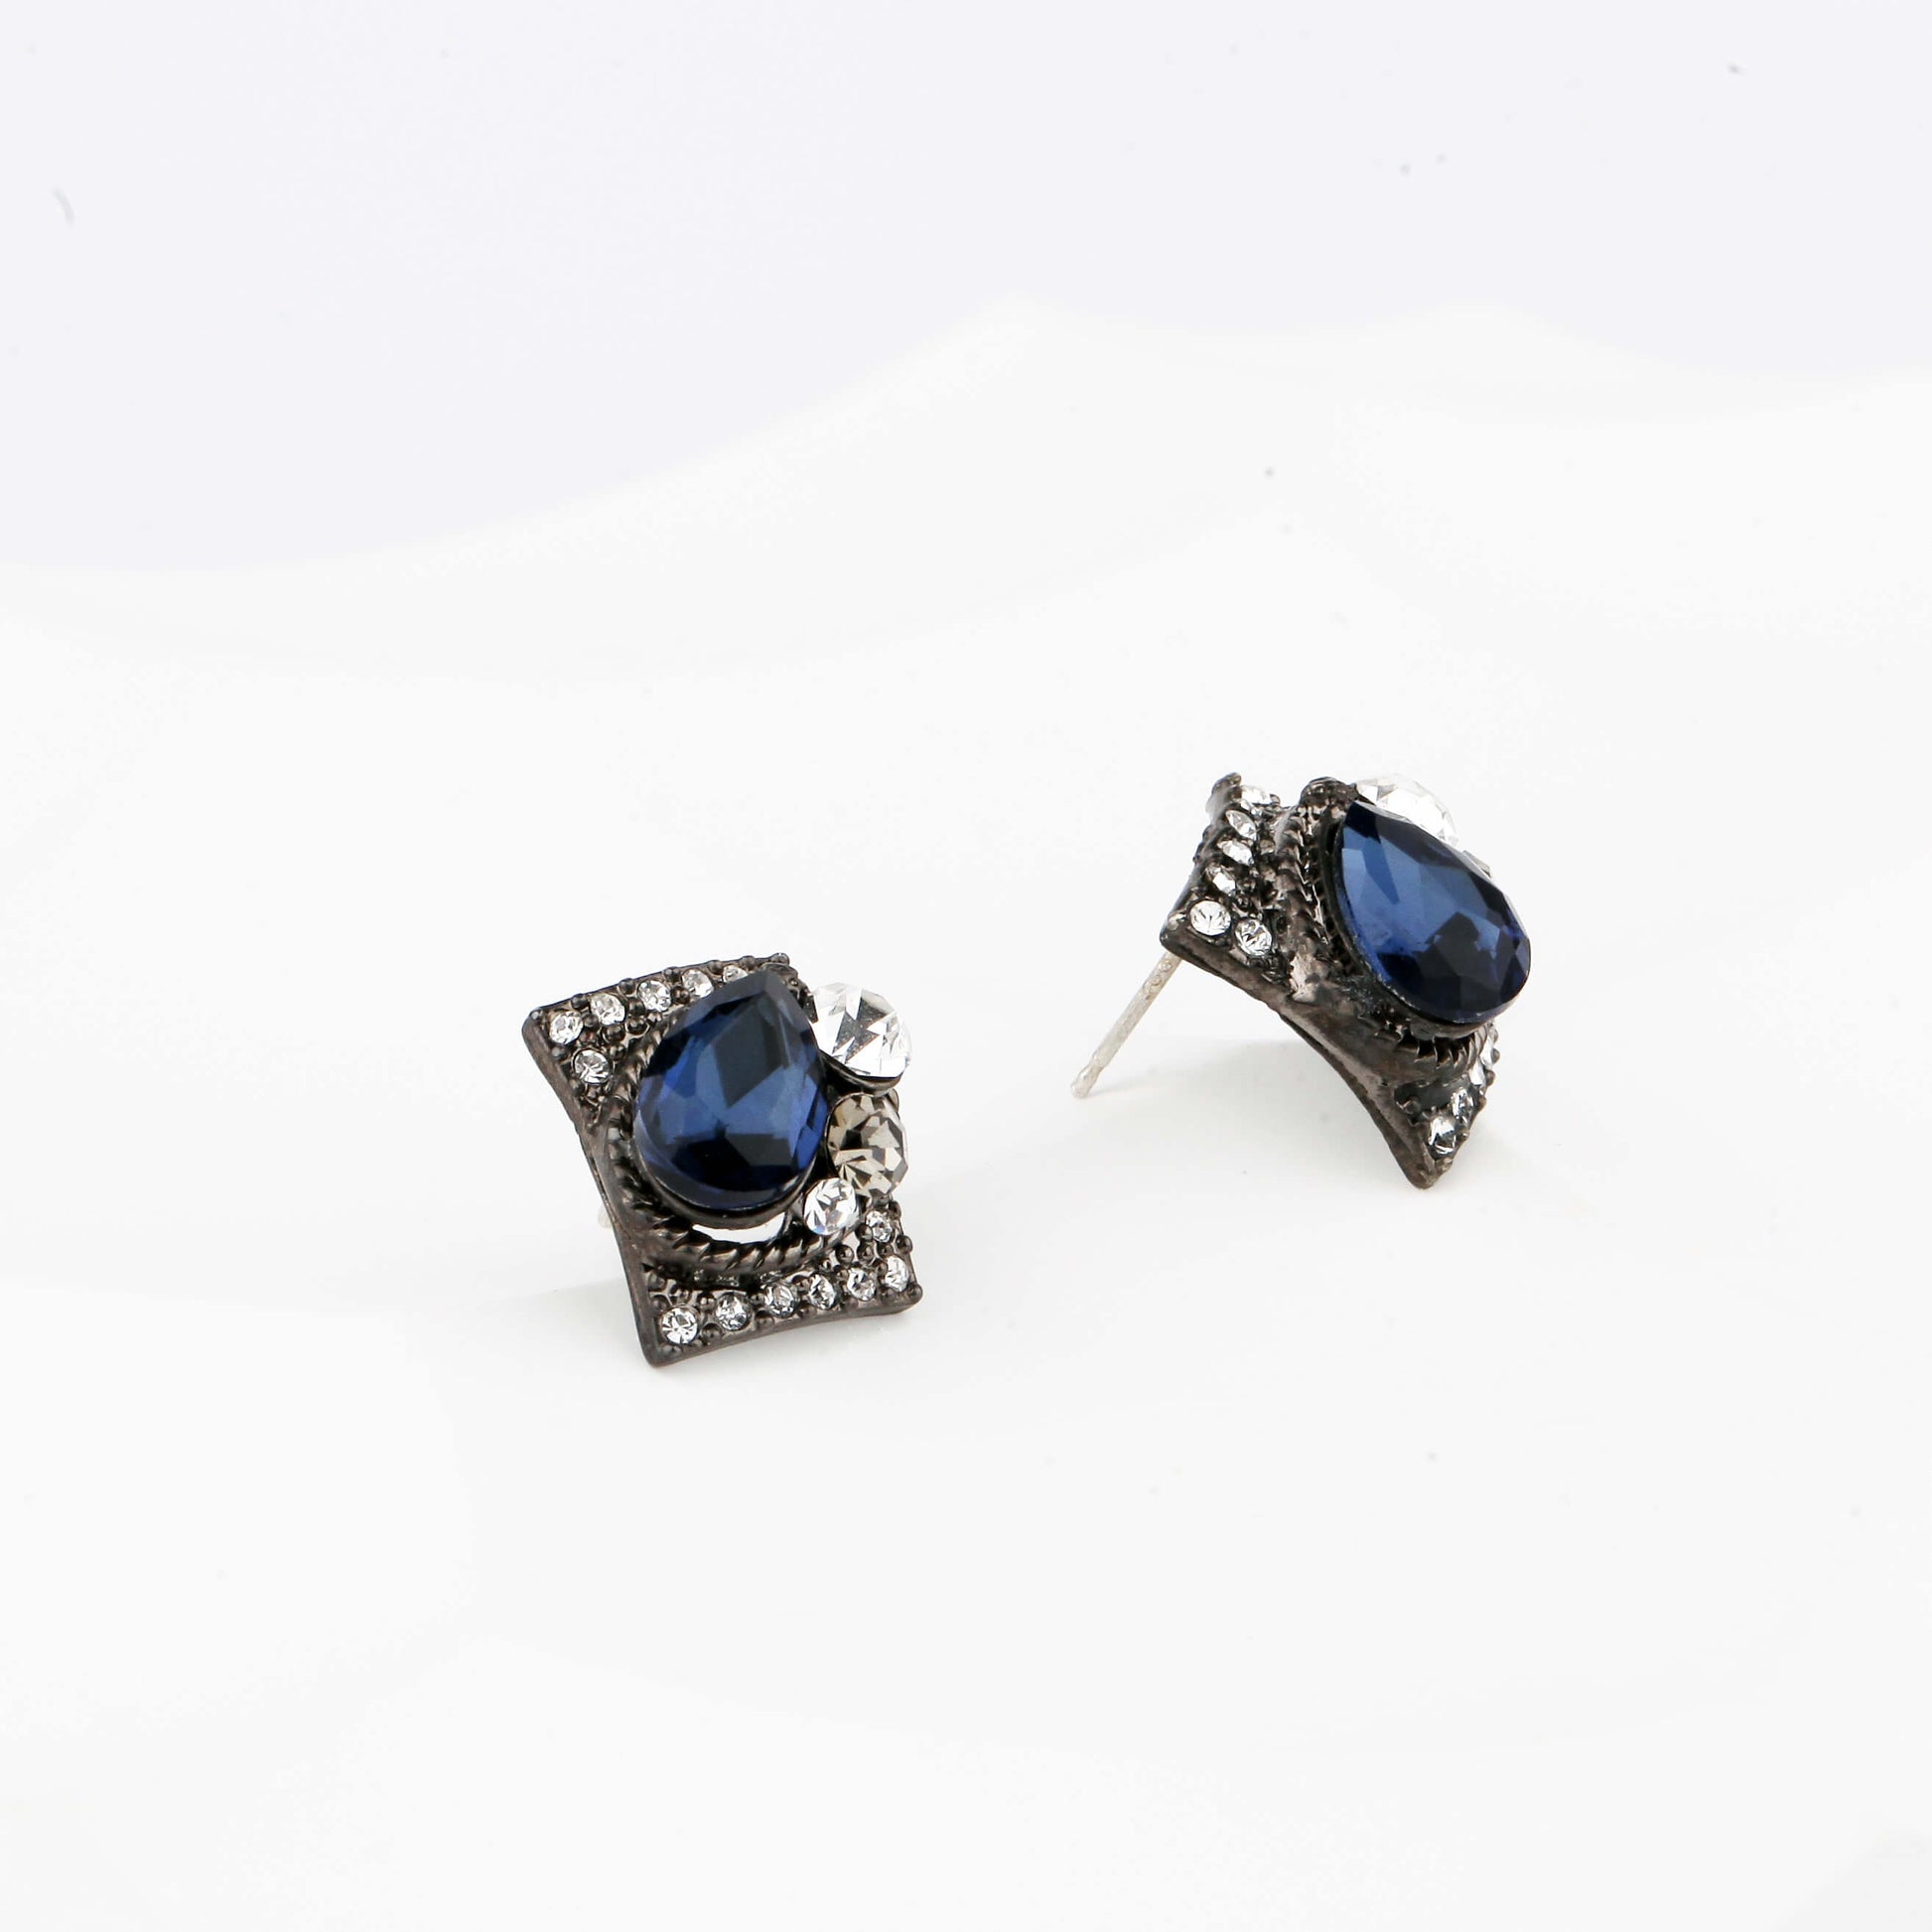 Vintage Swarovski Crystal Stud Earrings with Sterling Silver